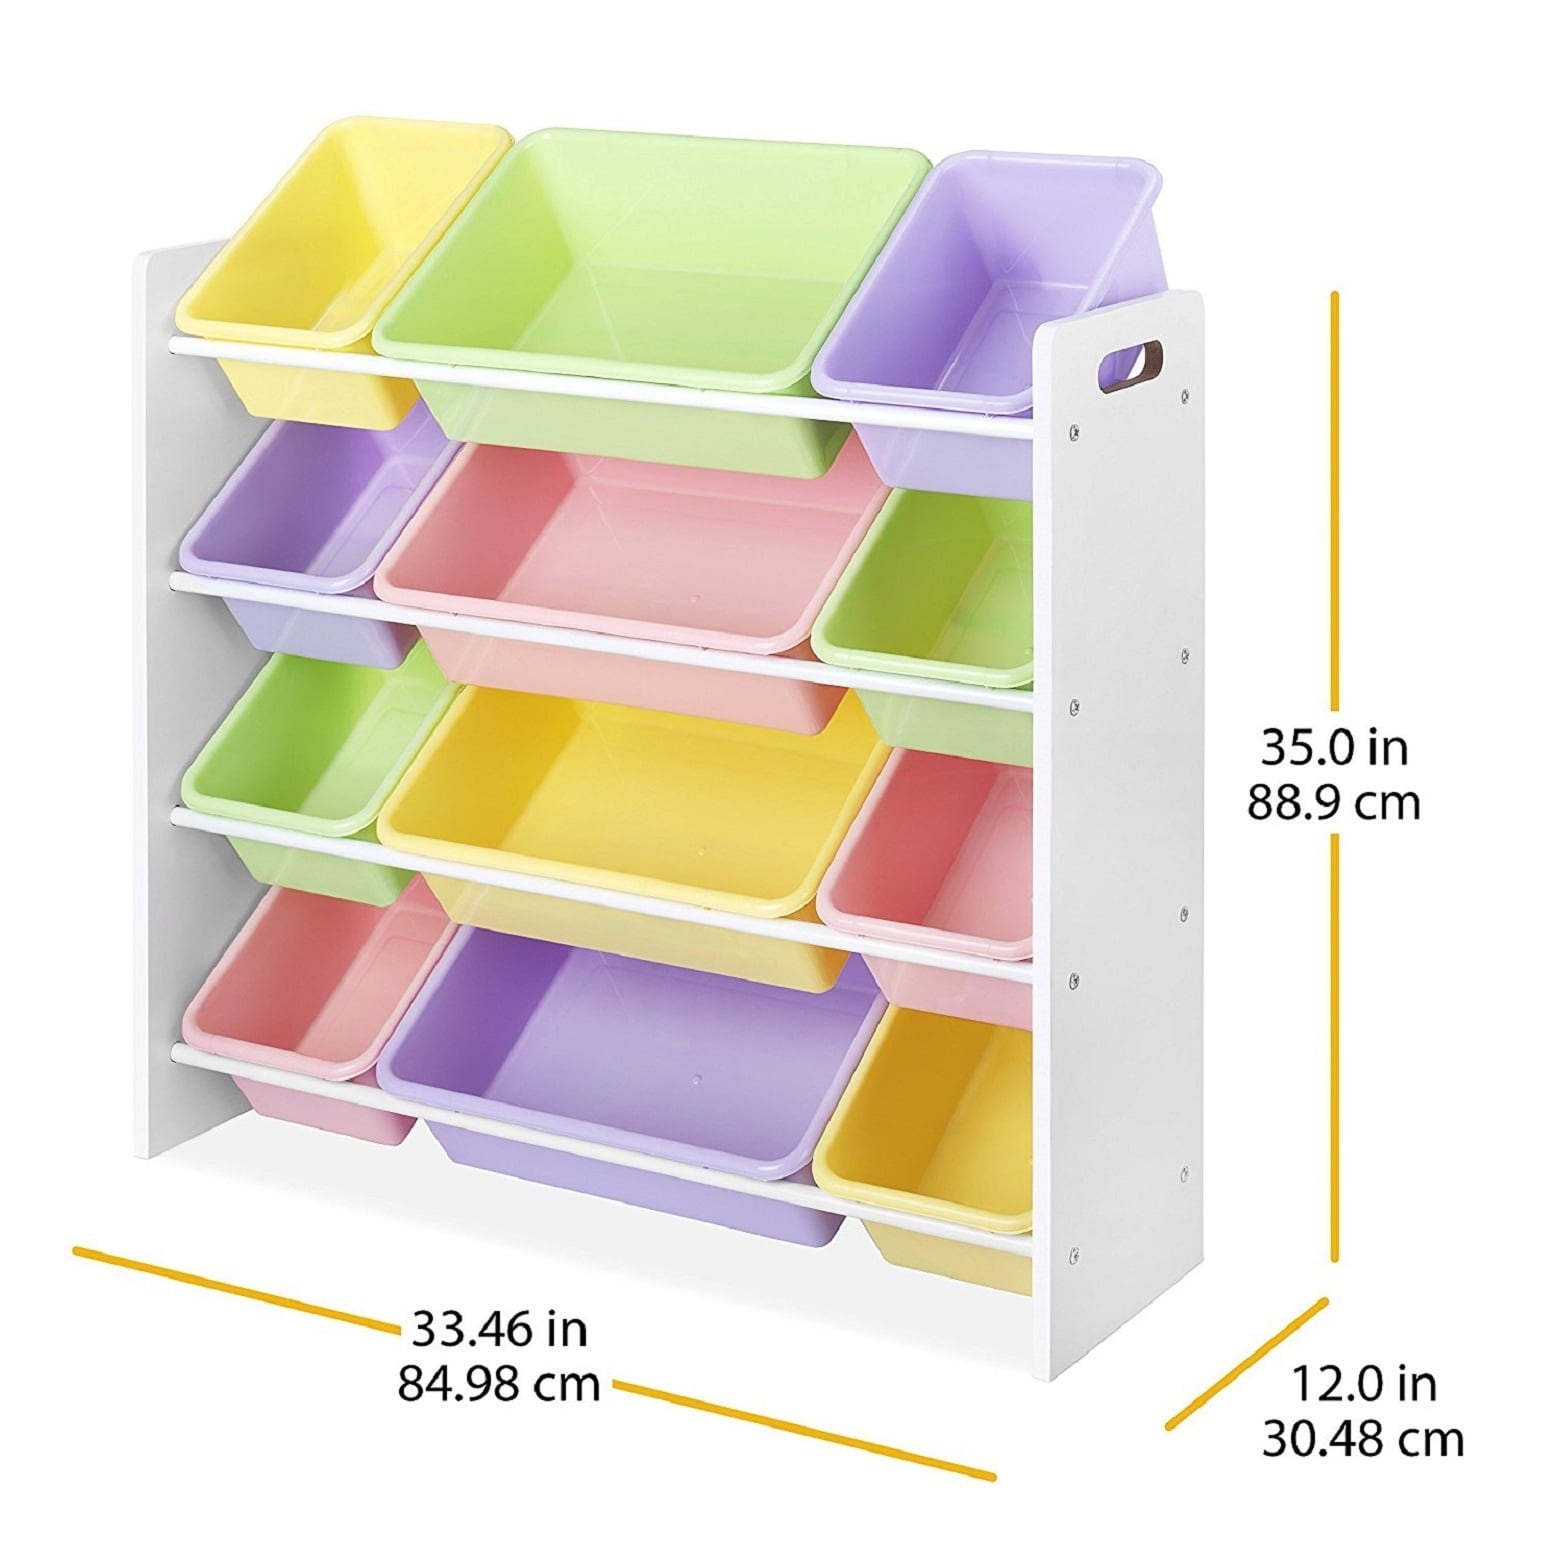 HoneyCanDo Kids Toy Storage Organizer With Bins, Pastel